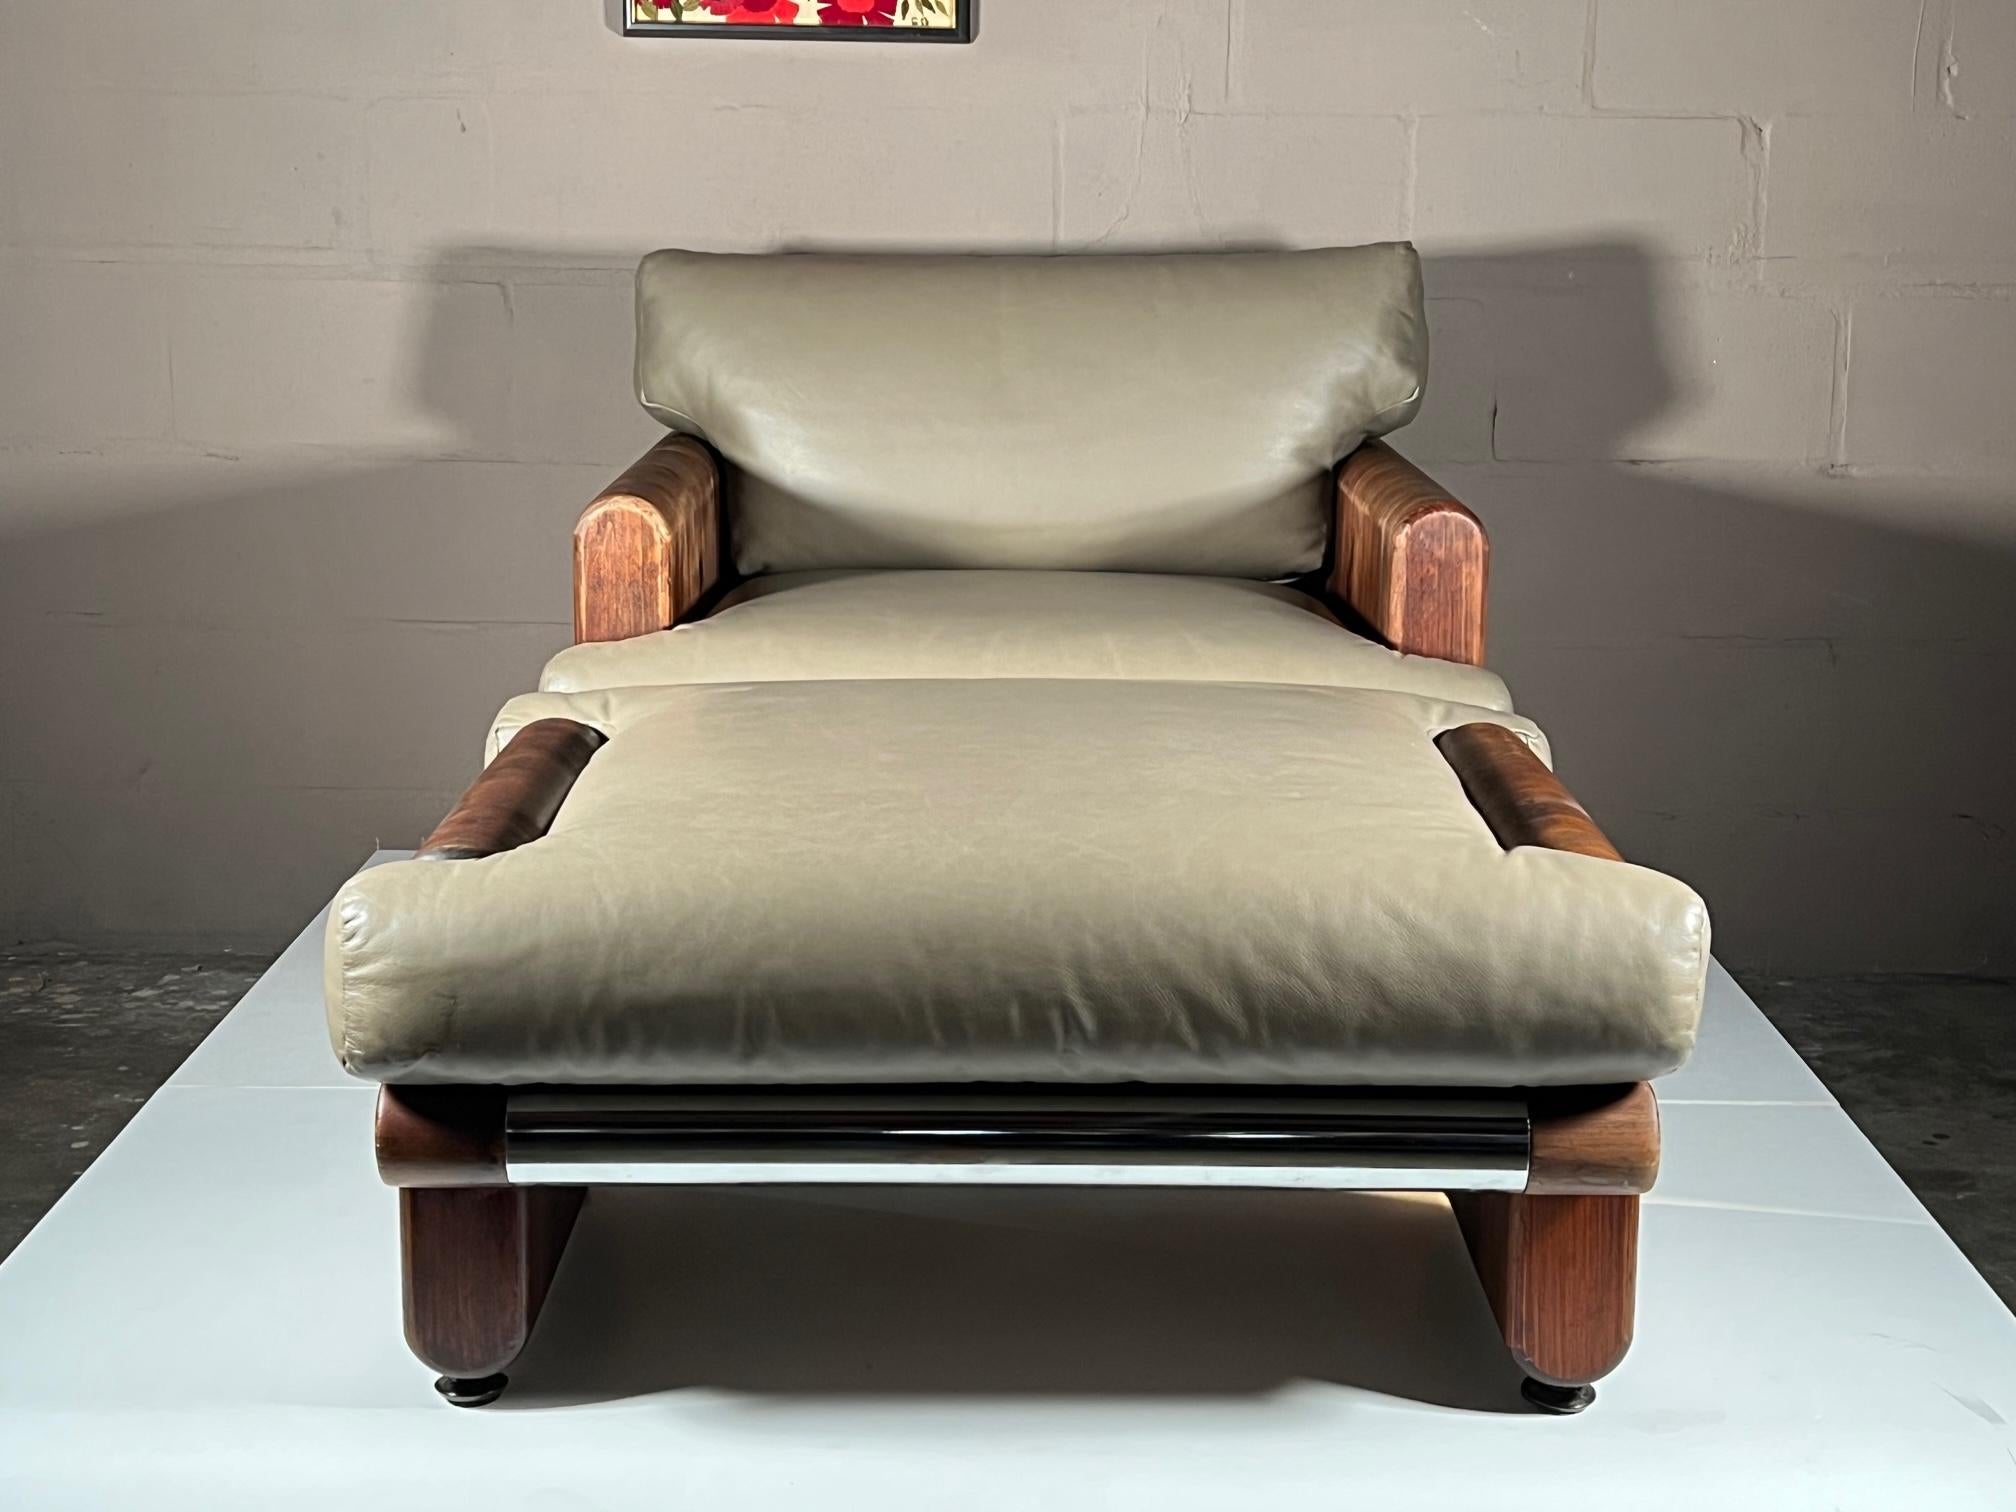 Ce rare fauteuil et ottoman, conçu par John Caldwell et fabriqué par California Furniture Shops, Ltd, est un excellent exemple de l'artisanat américain vers 1976. Fabriquée en pin stratifié, avec des détails chromés et des coussins en cuir, cette